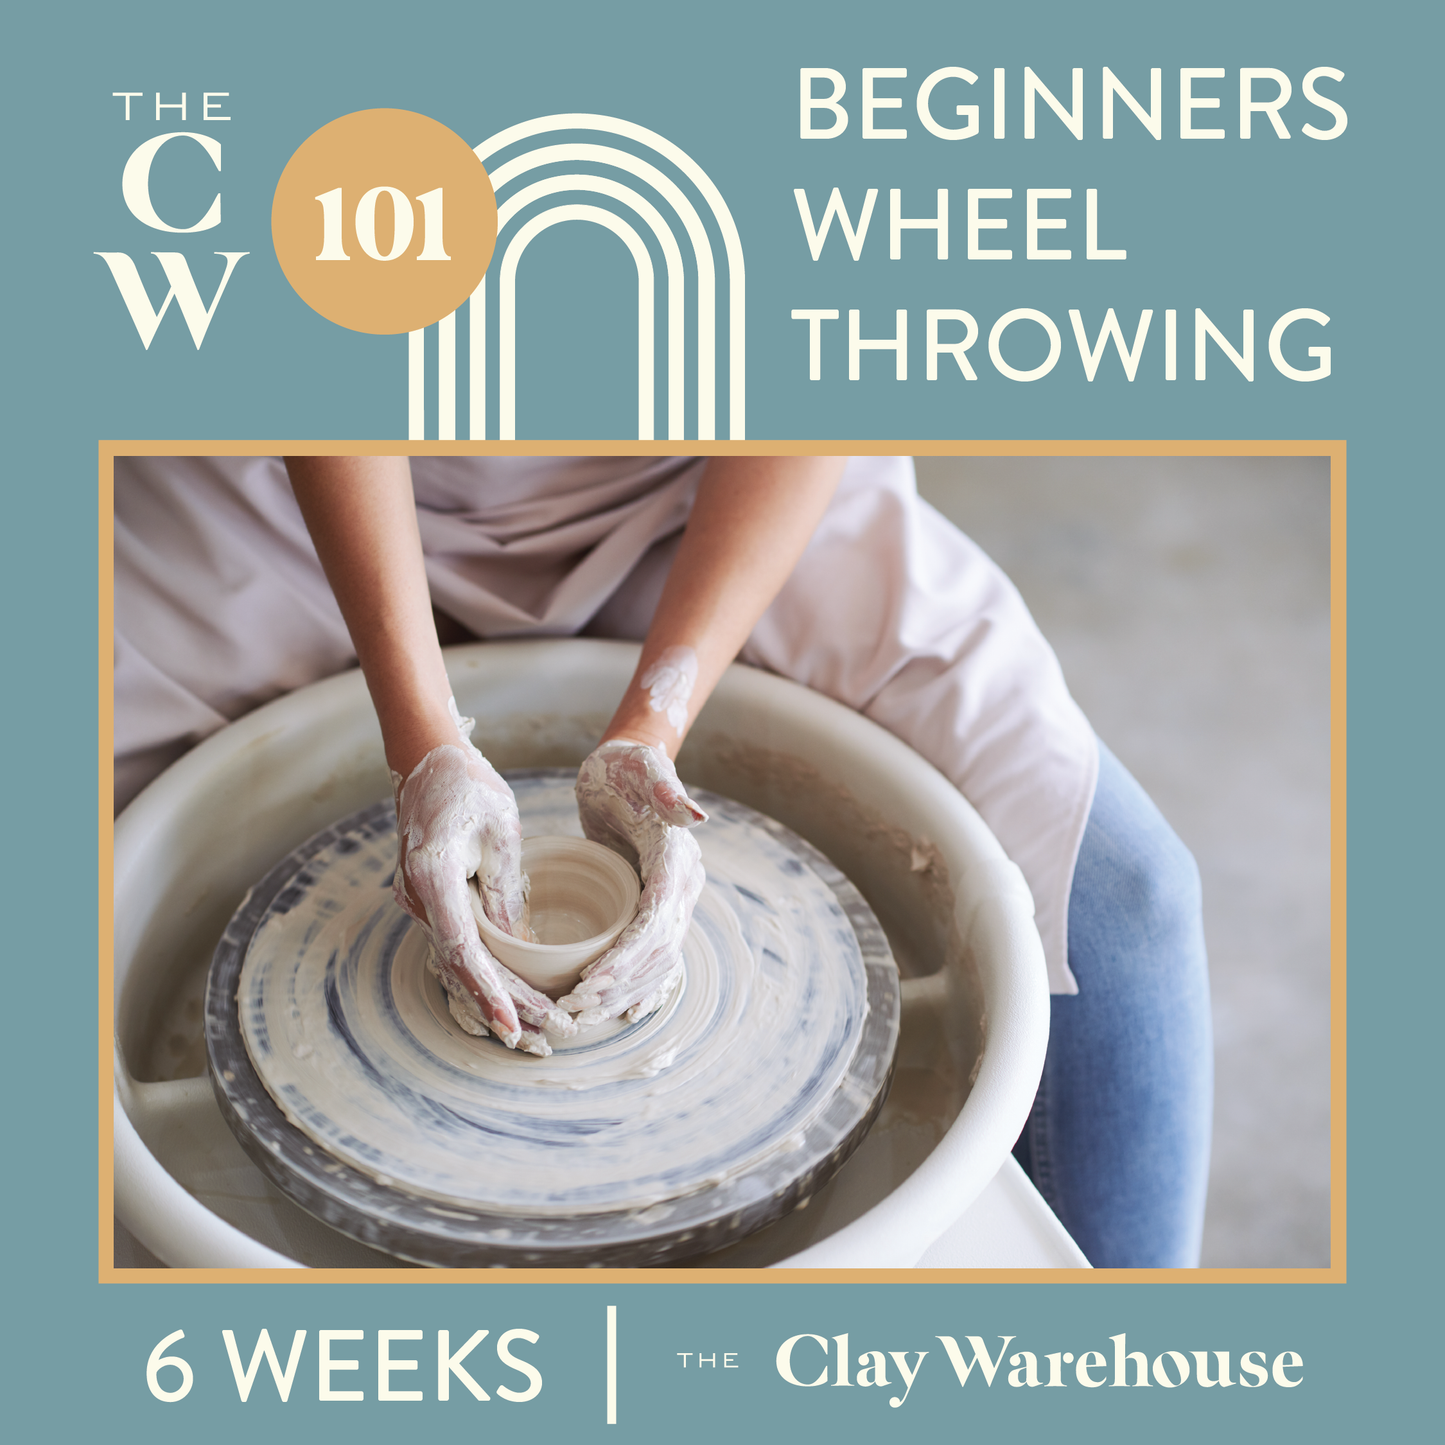 CW 101 - Beginners Wheel Throwing Workshop (6 weeks)